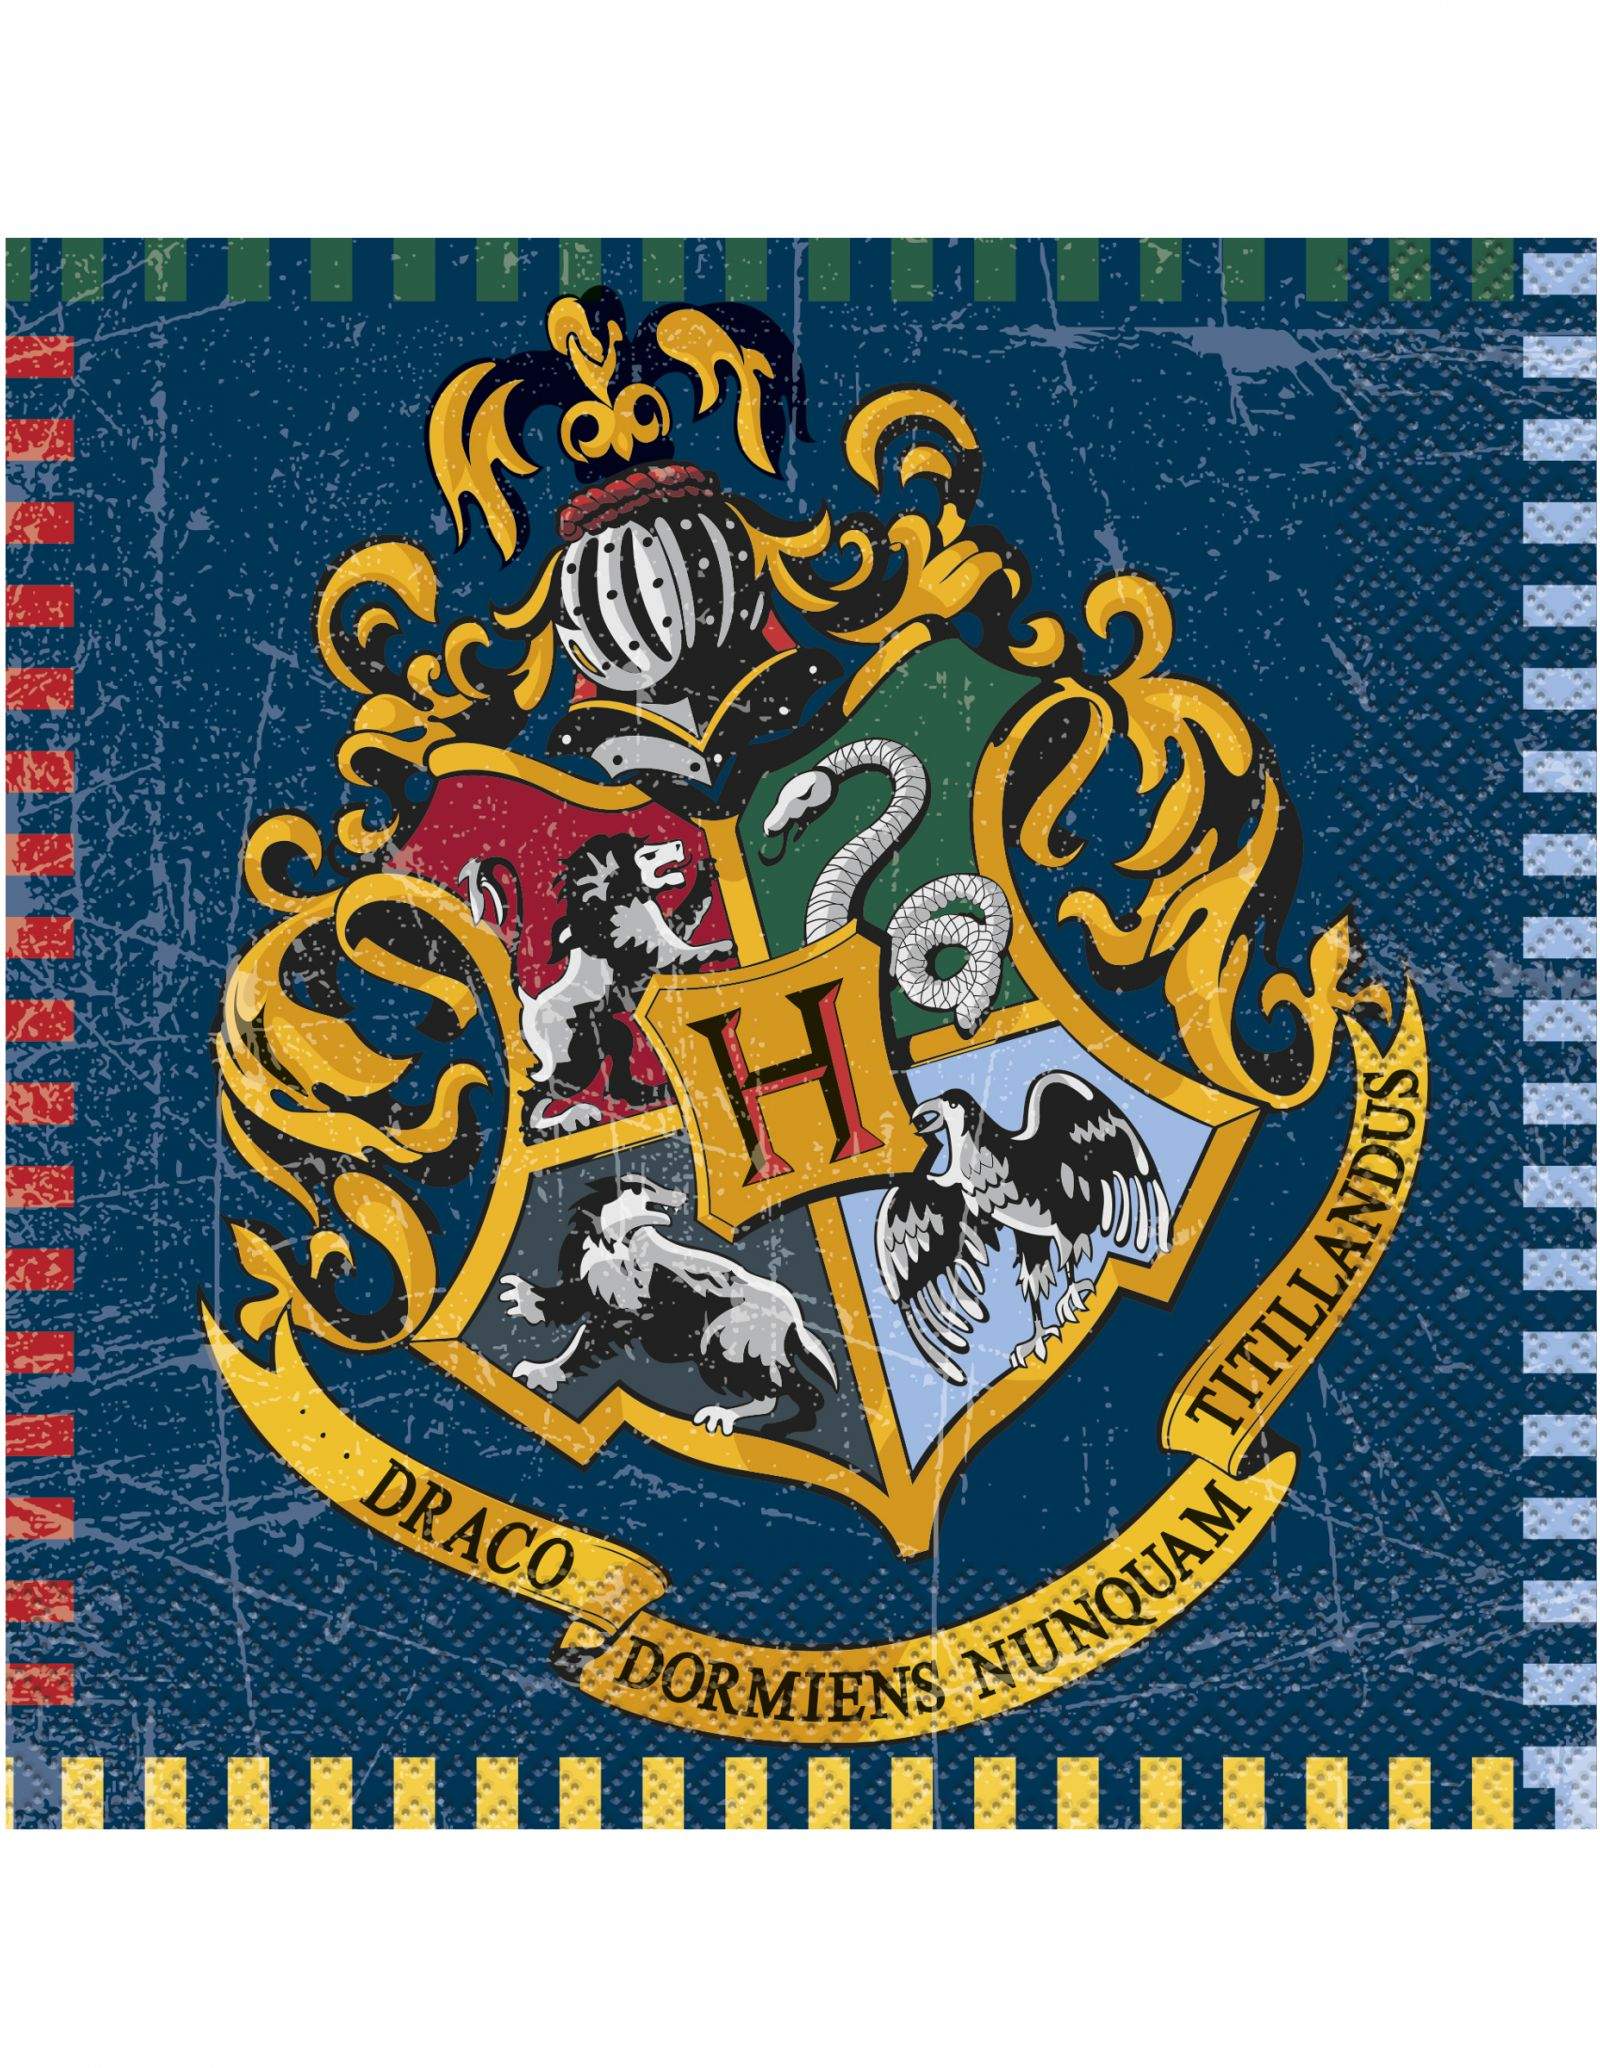 Grand pack de décoration d'anniversaire Harry Potter